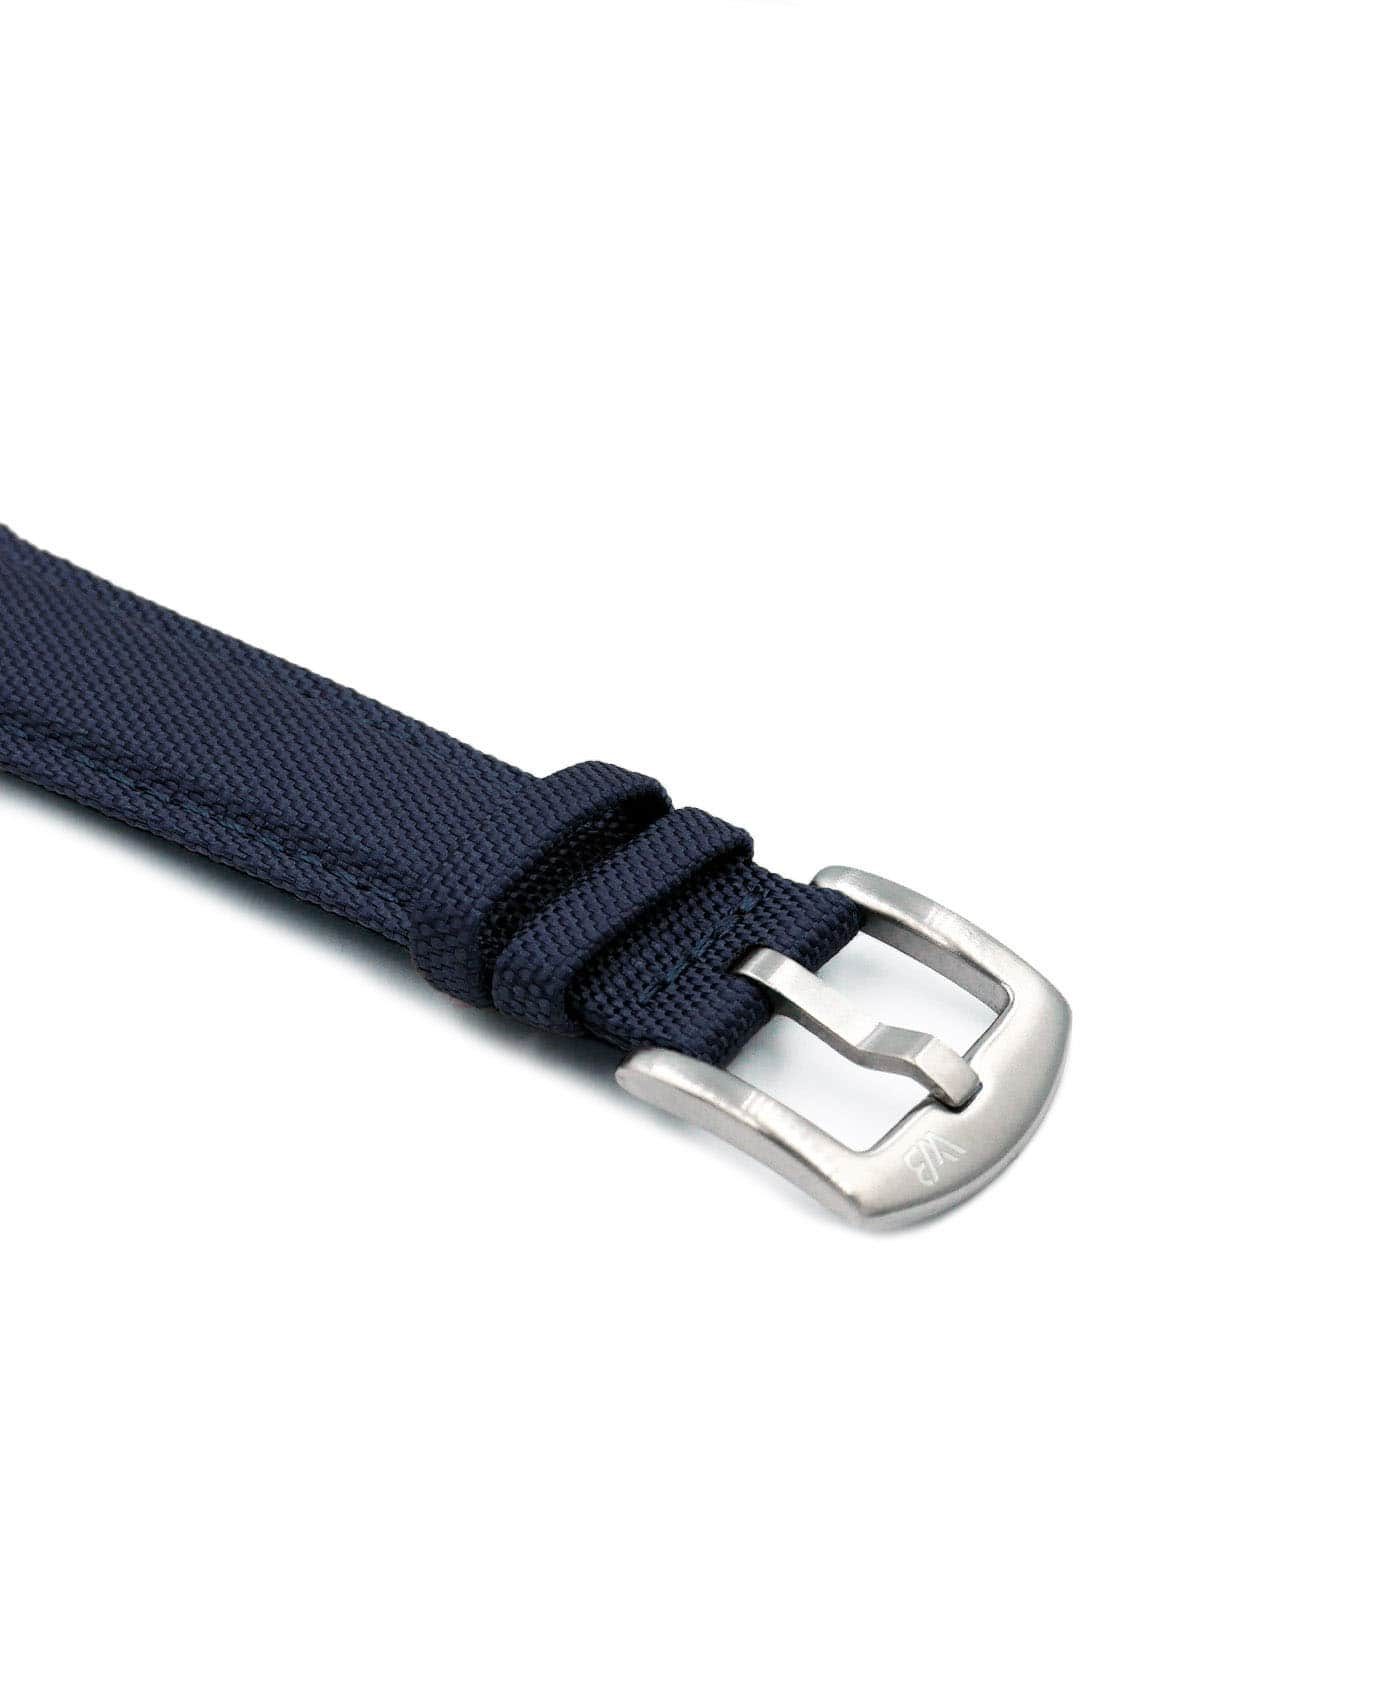 Premium Sailcloth watch strap dark blue WB Original buckle